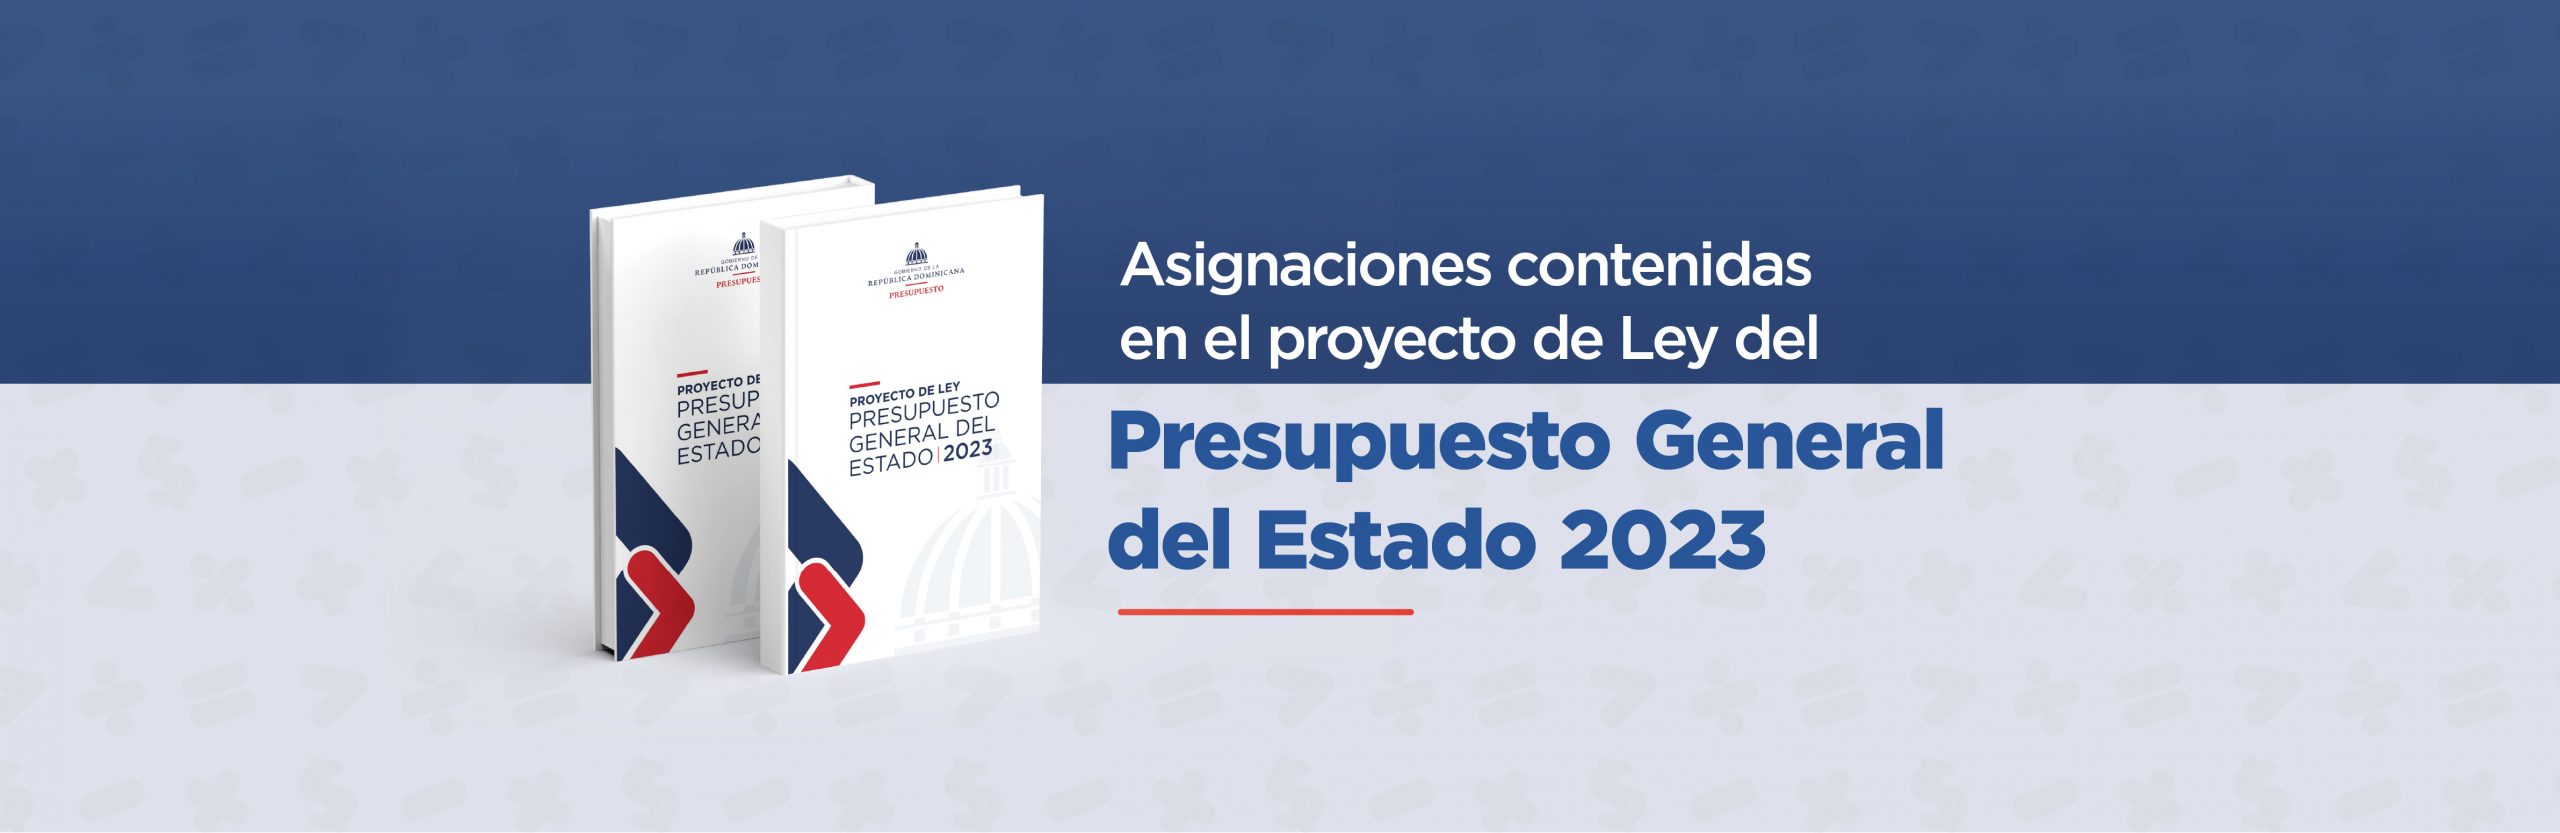 imagen Gobierno somete al Congreso Nacional proyecto de Ley de Presupuesto General del Estado 2023